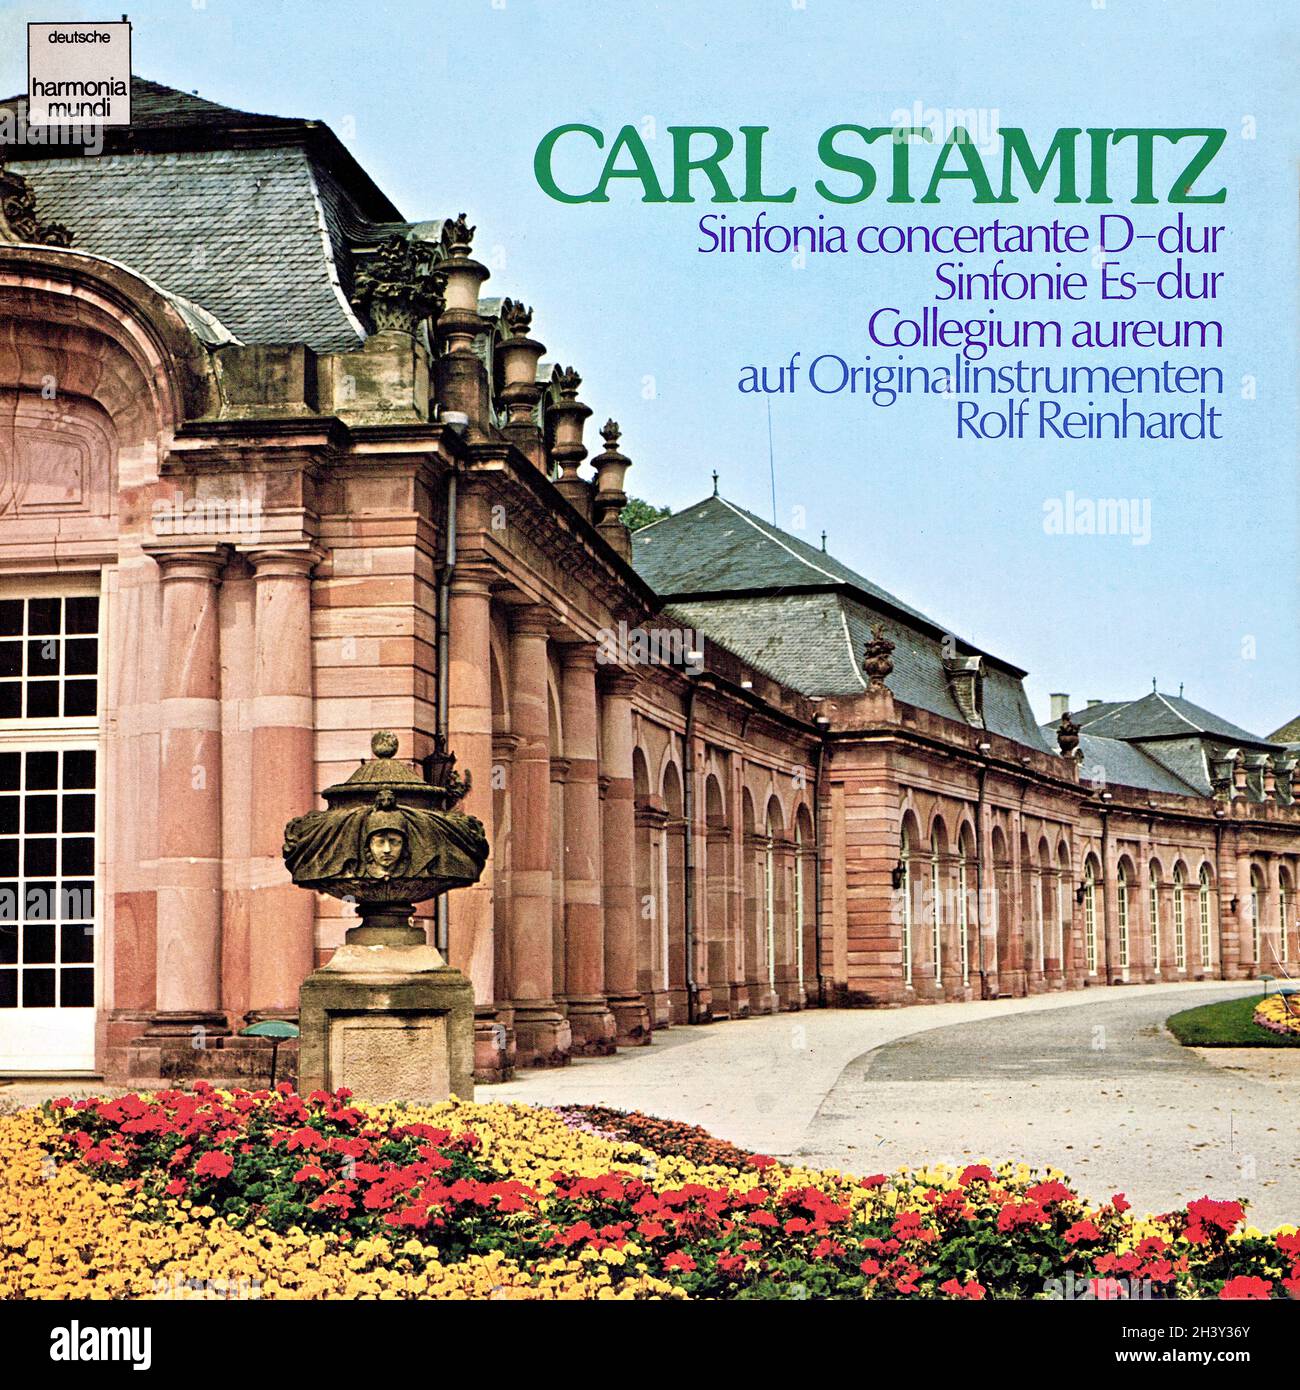 Stamitz Sinfonia concertante D-dur â€¢ Sinfonie Es-dur - Collegium Aureum Reinhardt Harmonia mundi 1 - Classical Music Vintage Vinyl Record Stock Photo